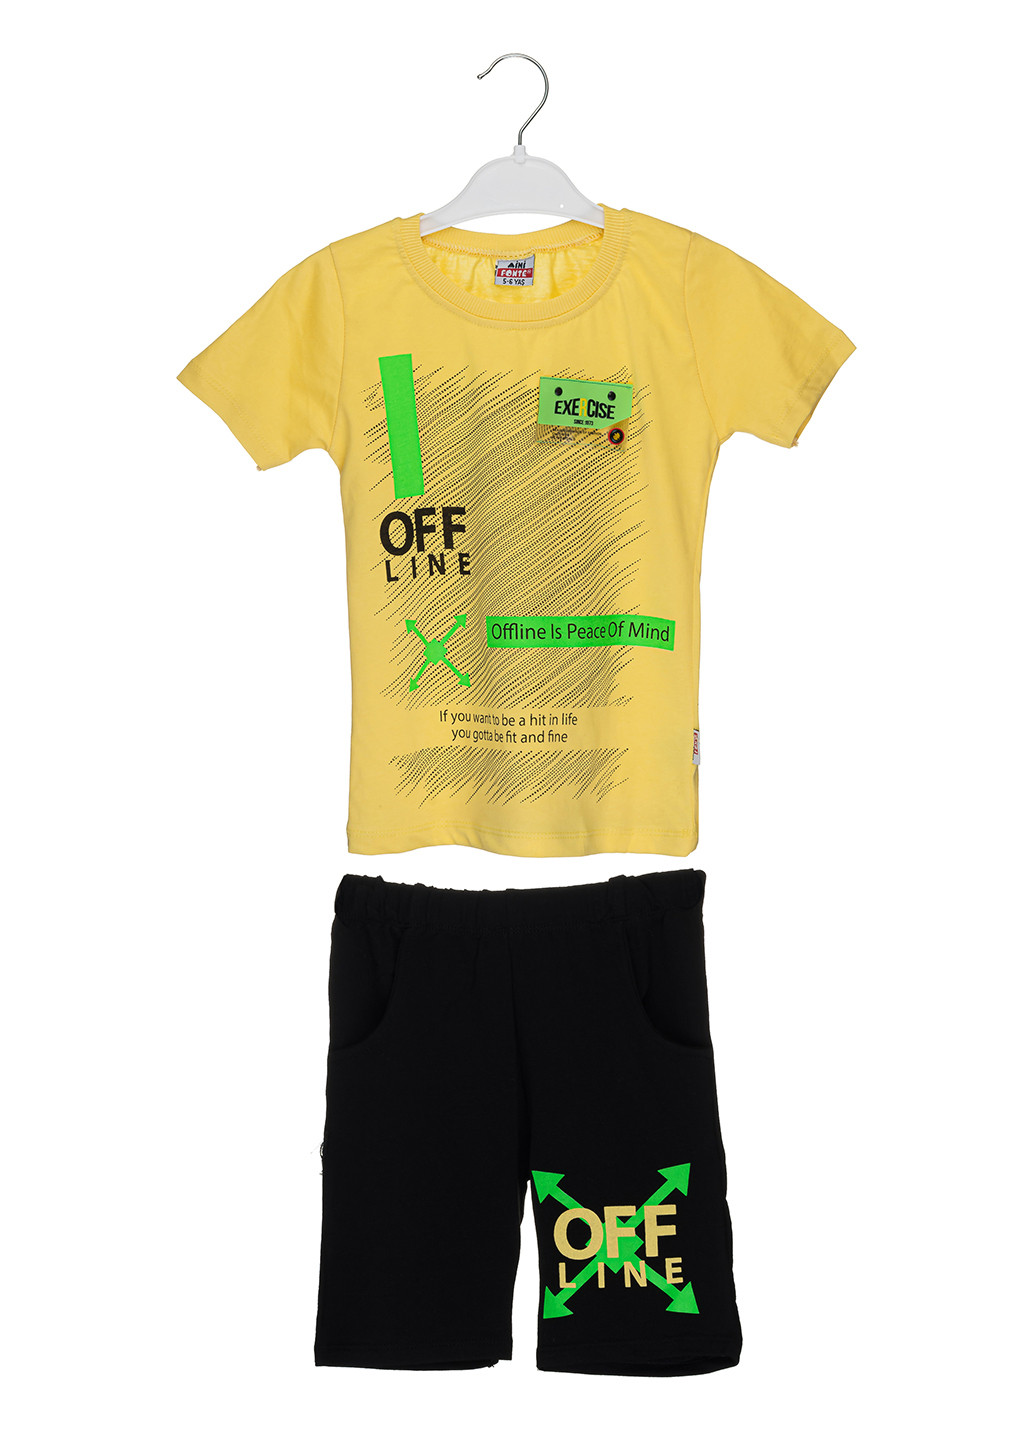 Желтый летний комплект (футболка, шорты) Mini Fonte